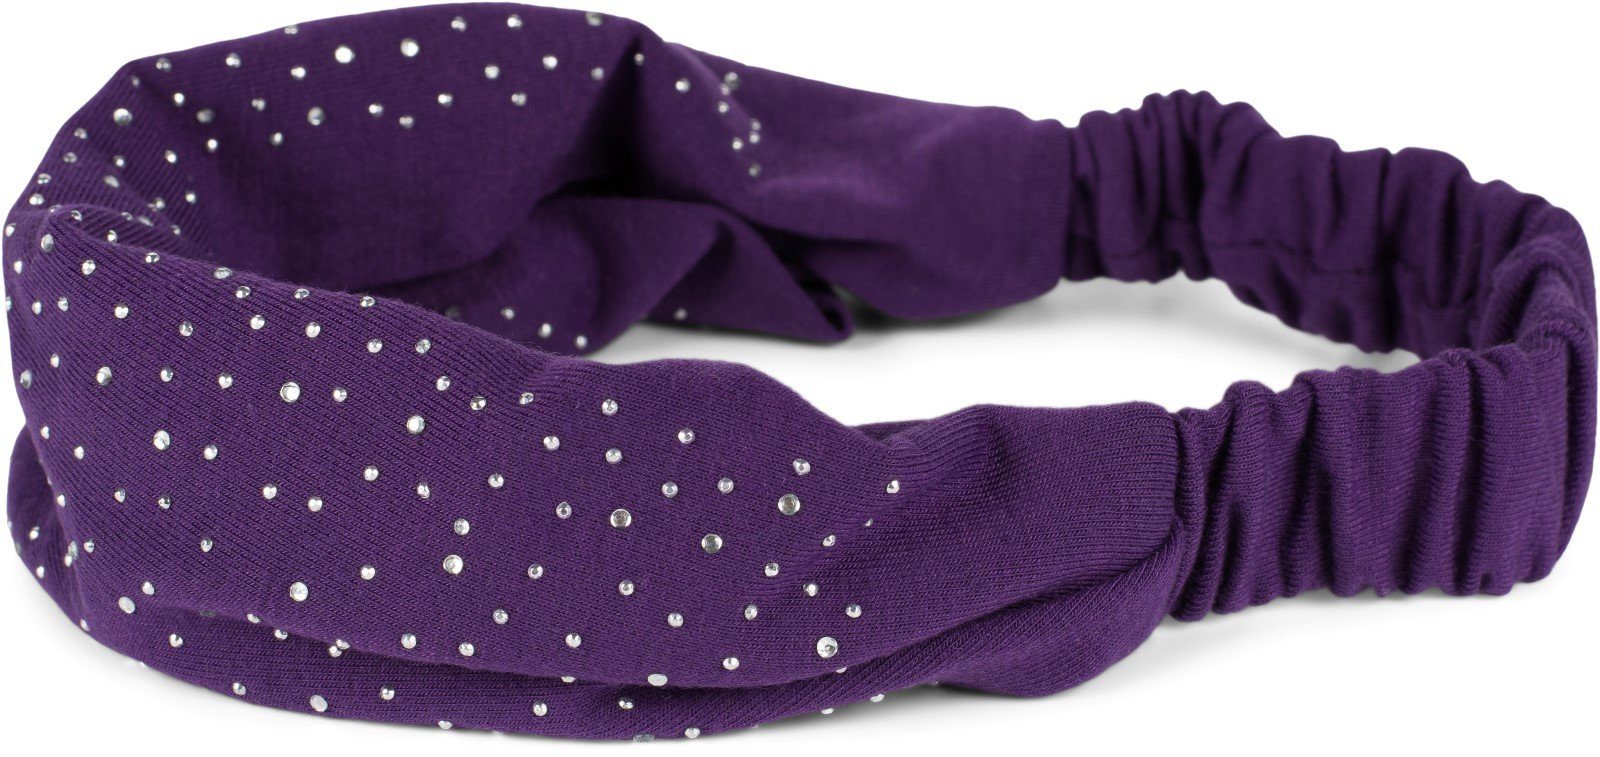 Violett Haarband, 1-tlg., styleBREAKER mit Haarband Strasssteine